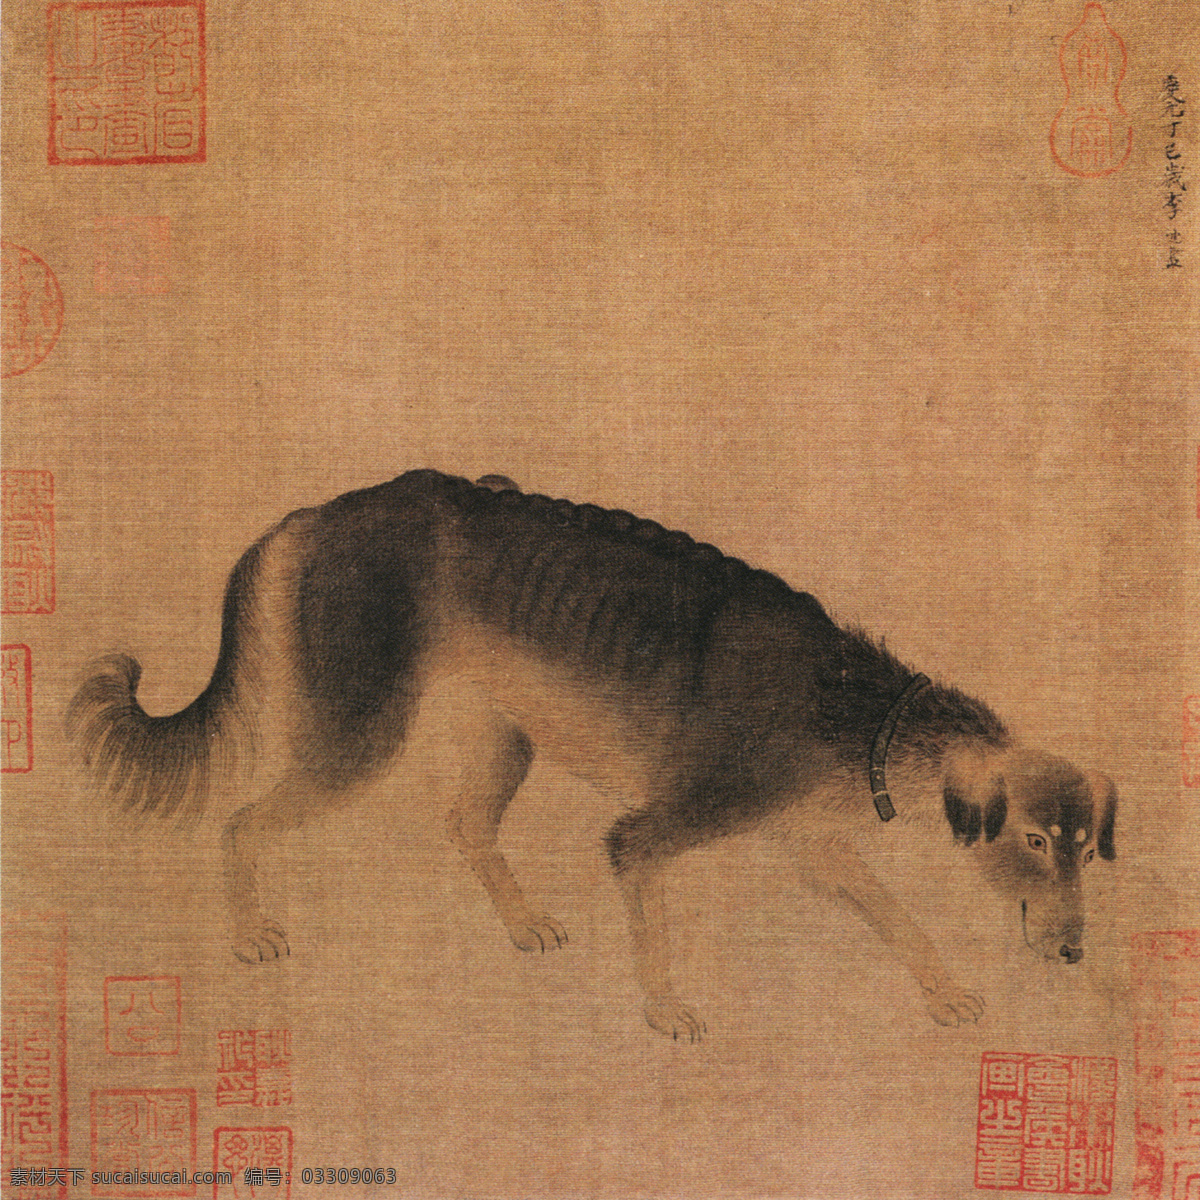 猎犬图 花鸟画 中国 古画 中国古画 设计素材 花鸟名画 古典藏画 书画美术 棕色